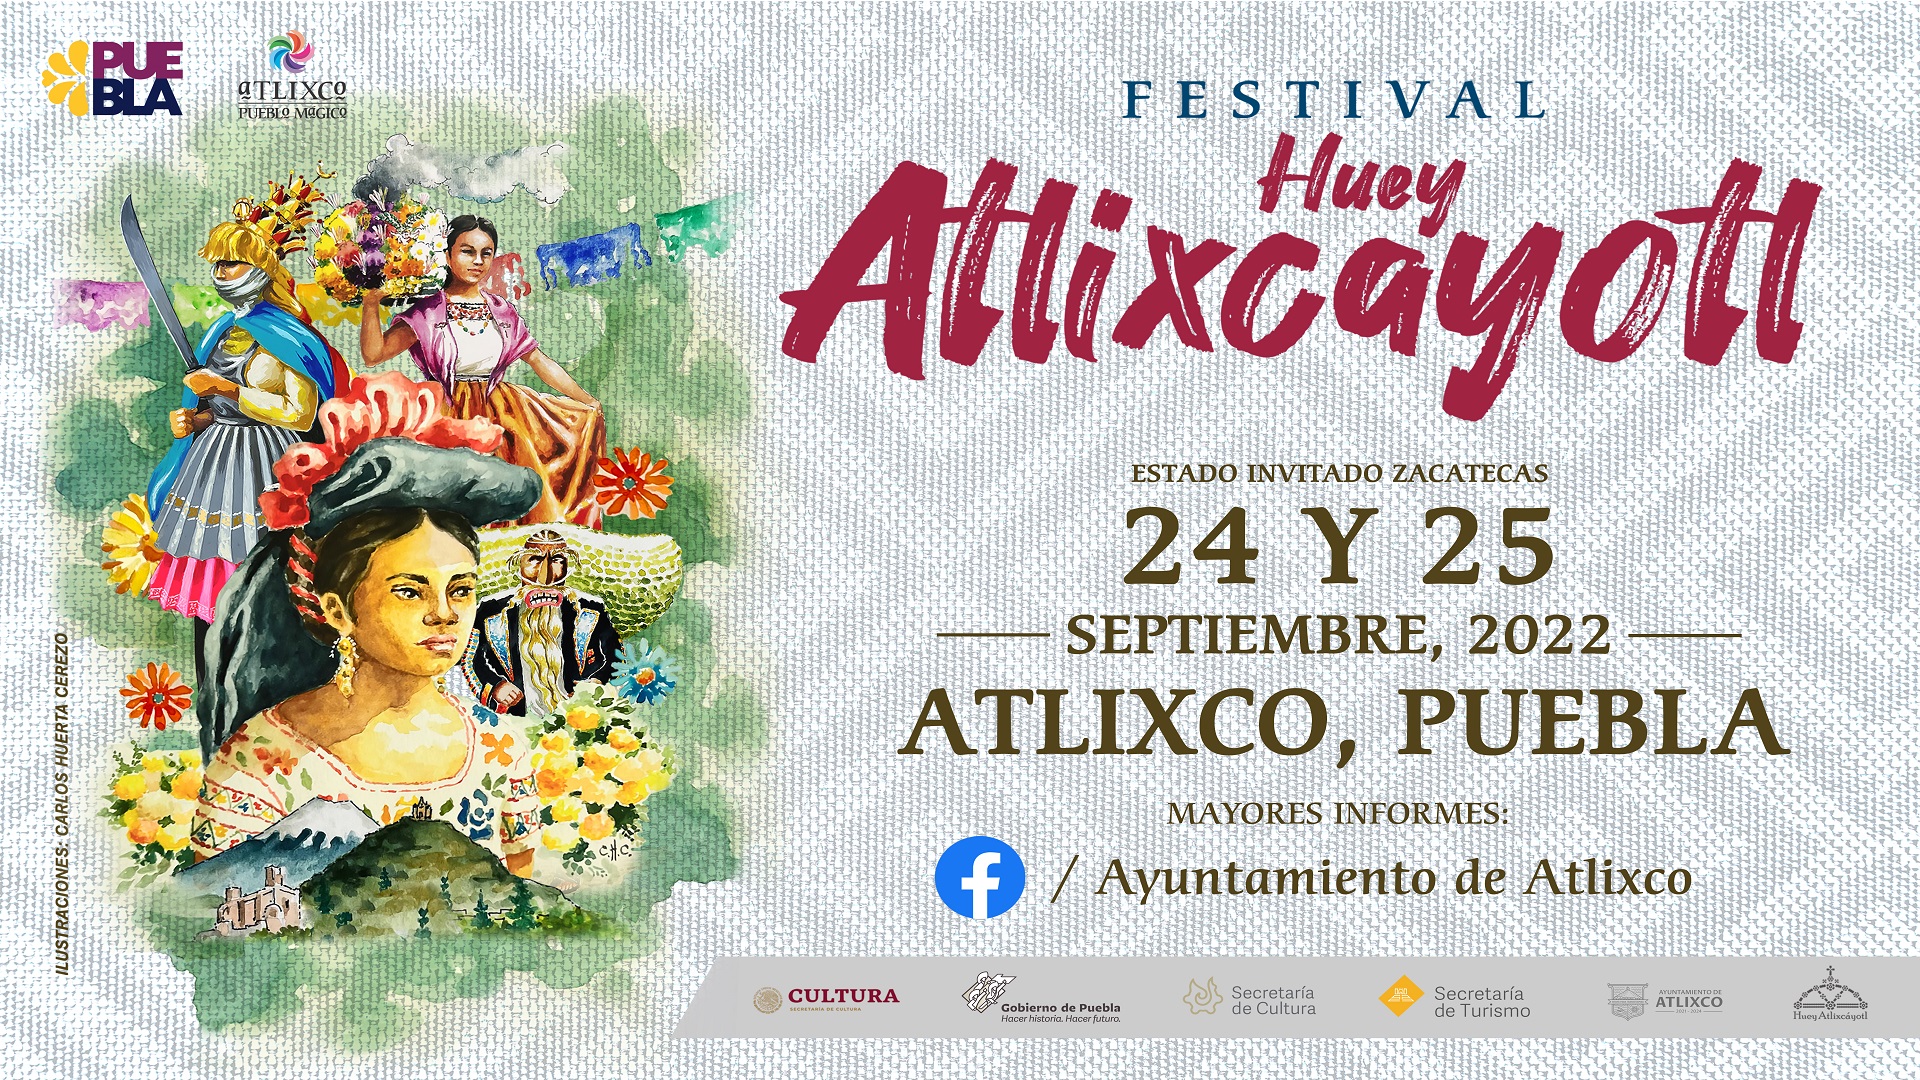 Festival Huey Atlixcayotl